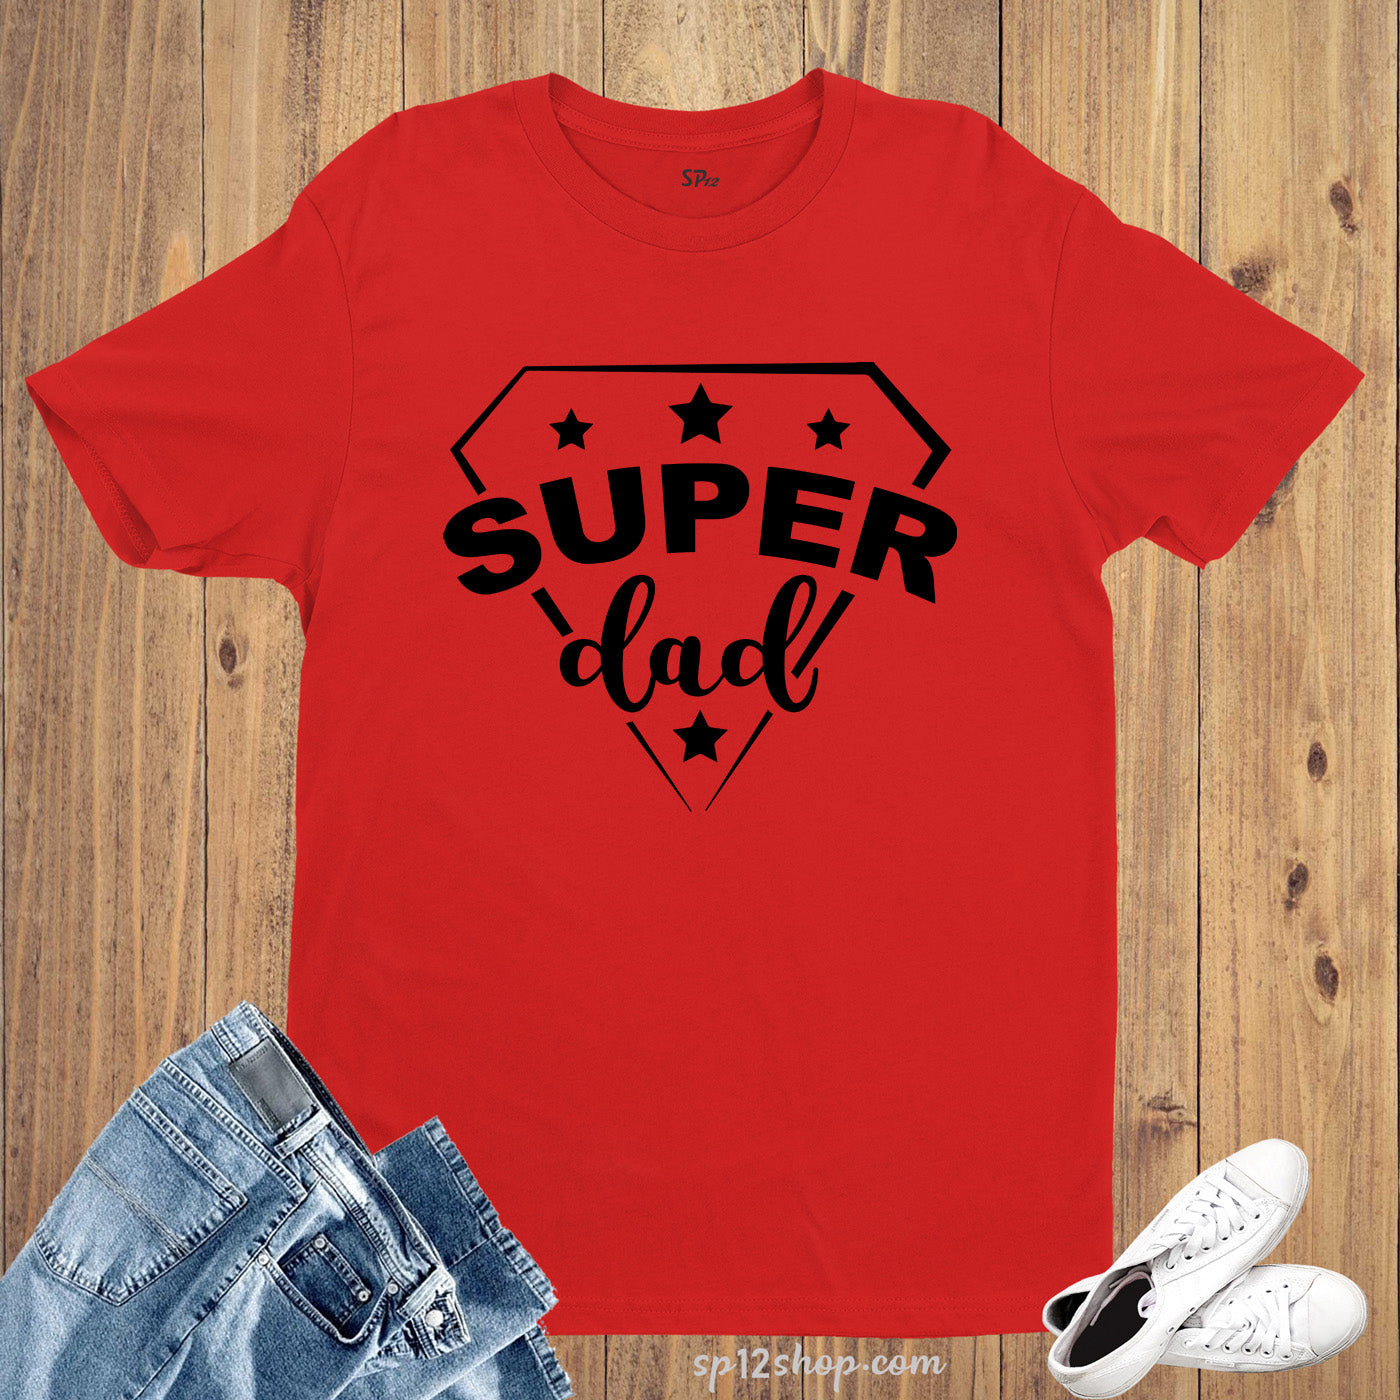 Super Dad T Shirt